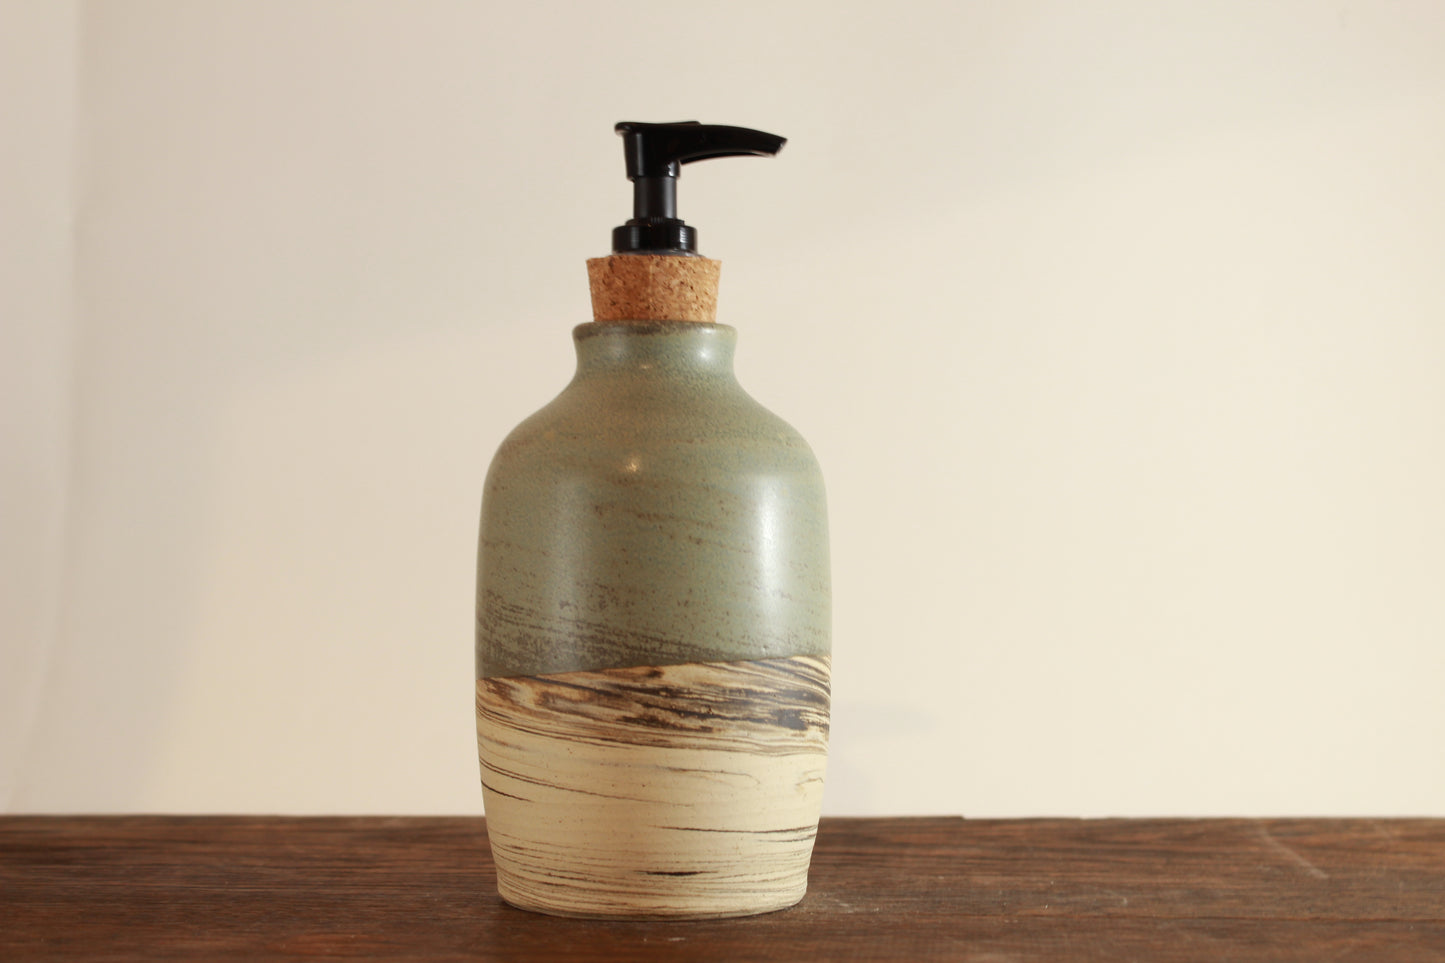 Handmade soap/lotion dispenser